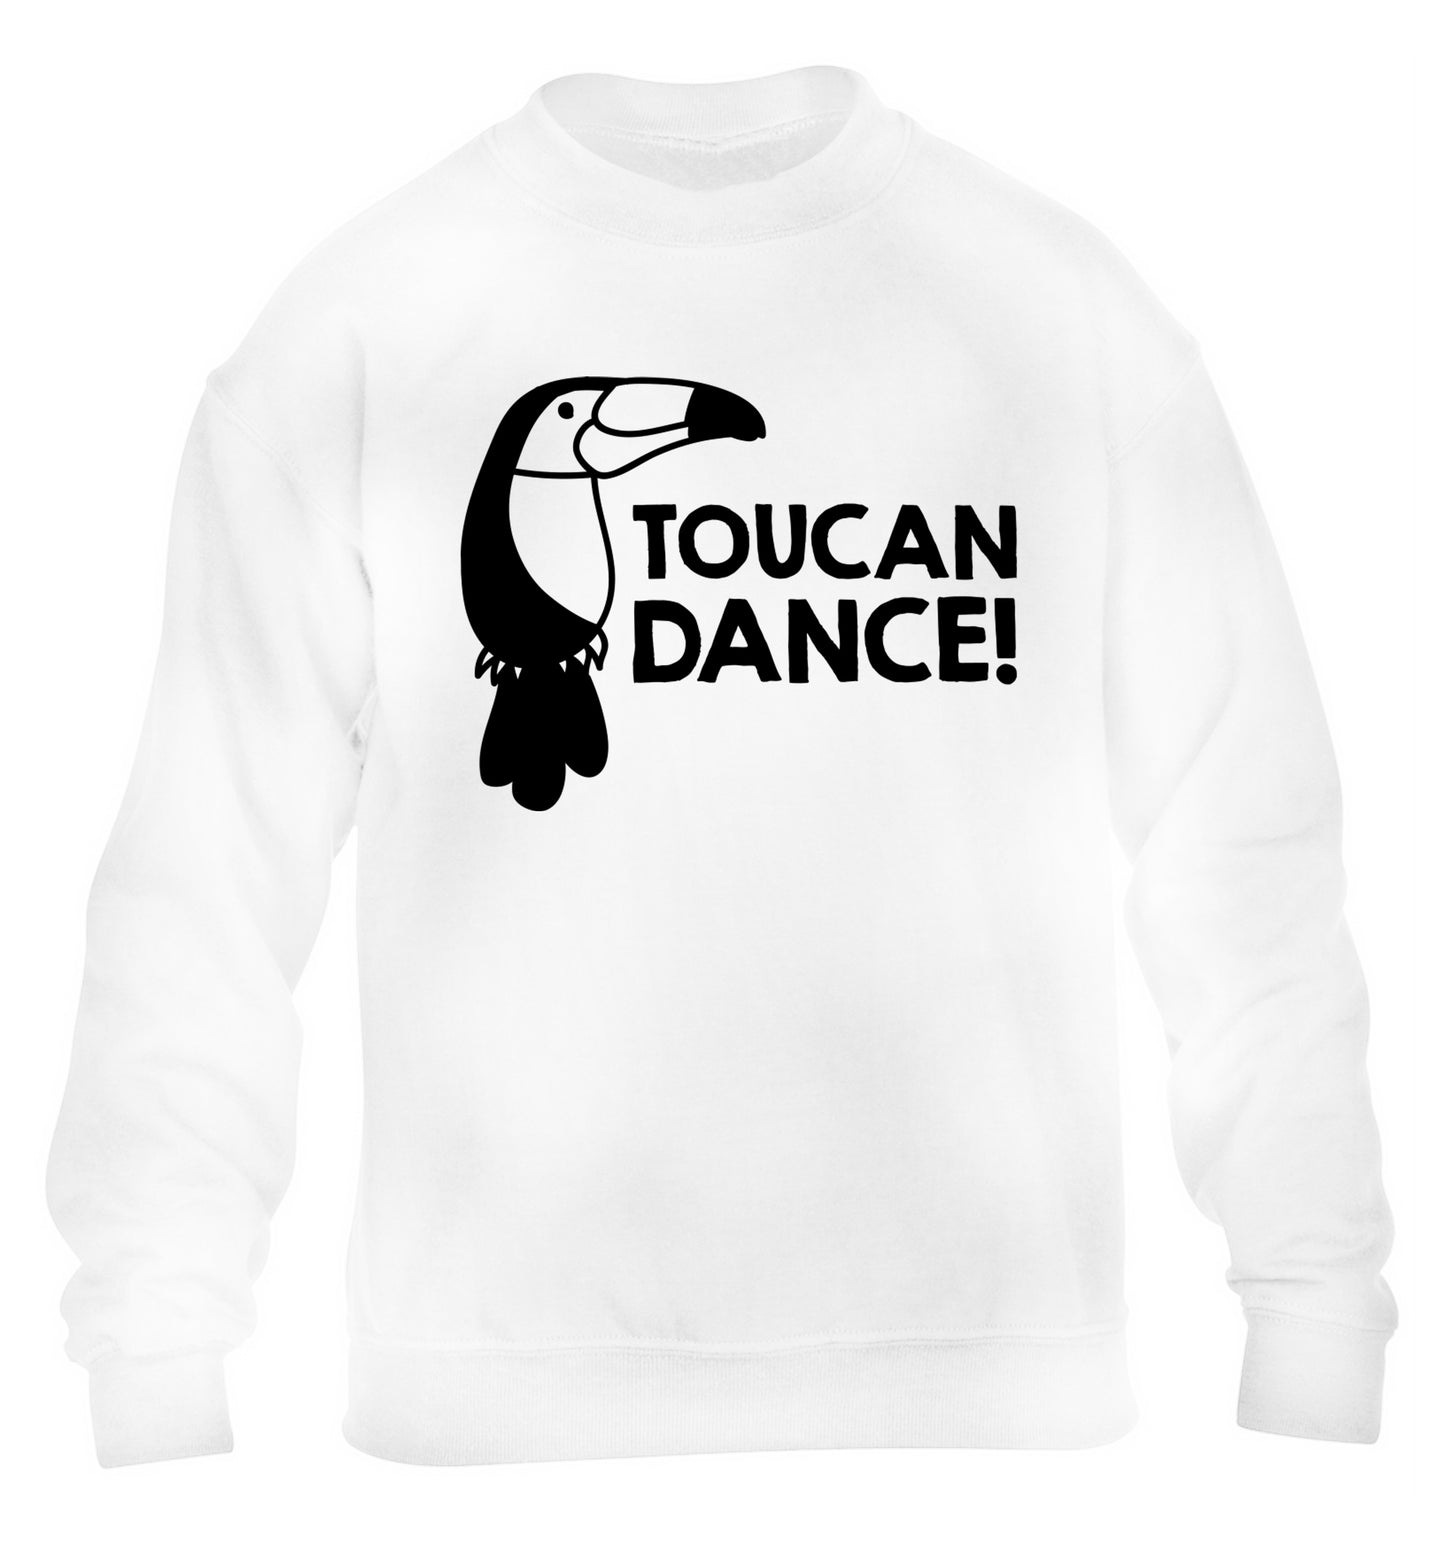 Toucan dance children's white sweater 12-13 Years